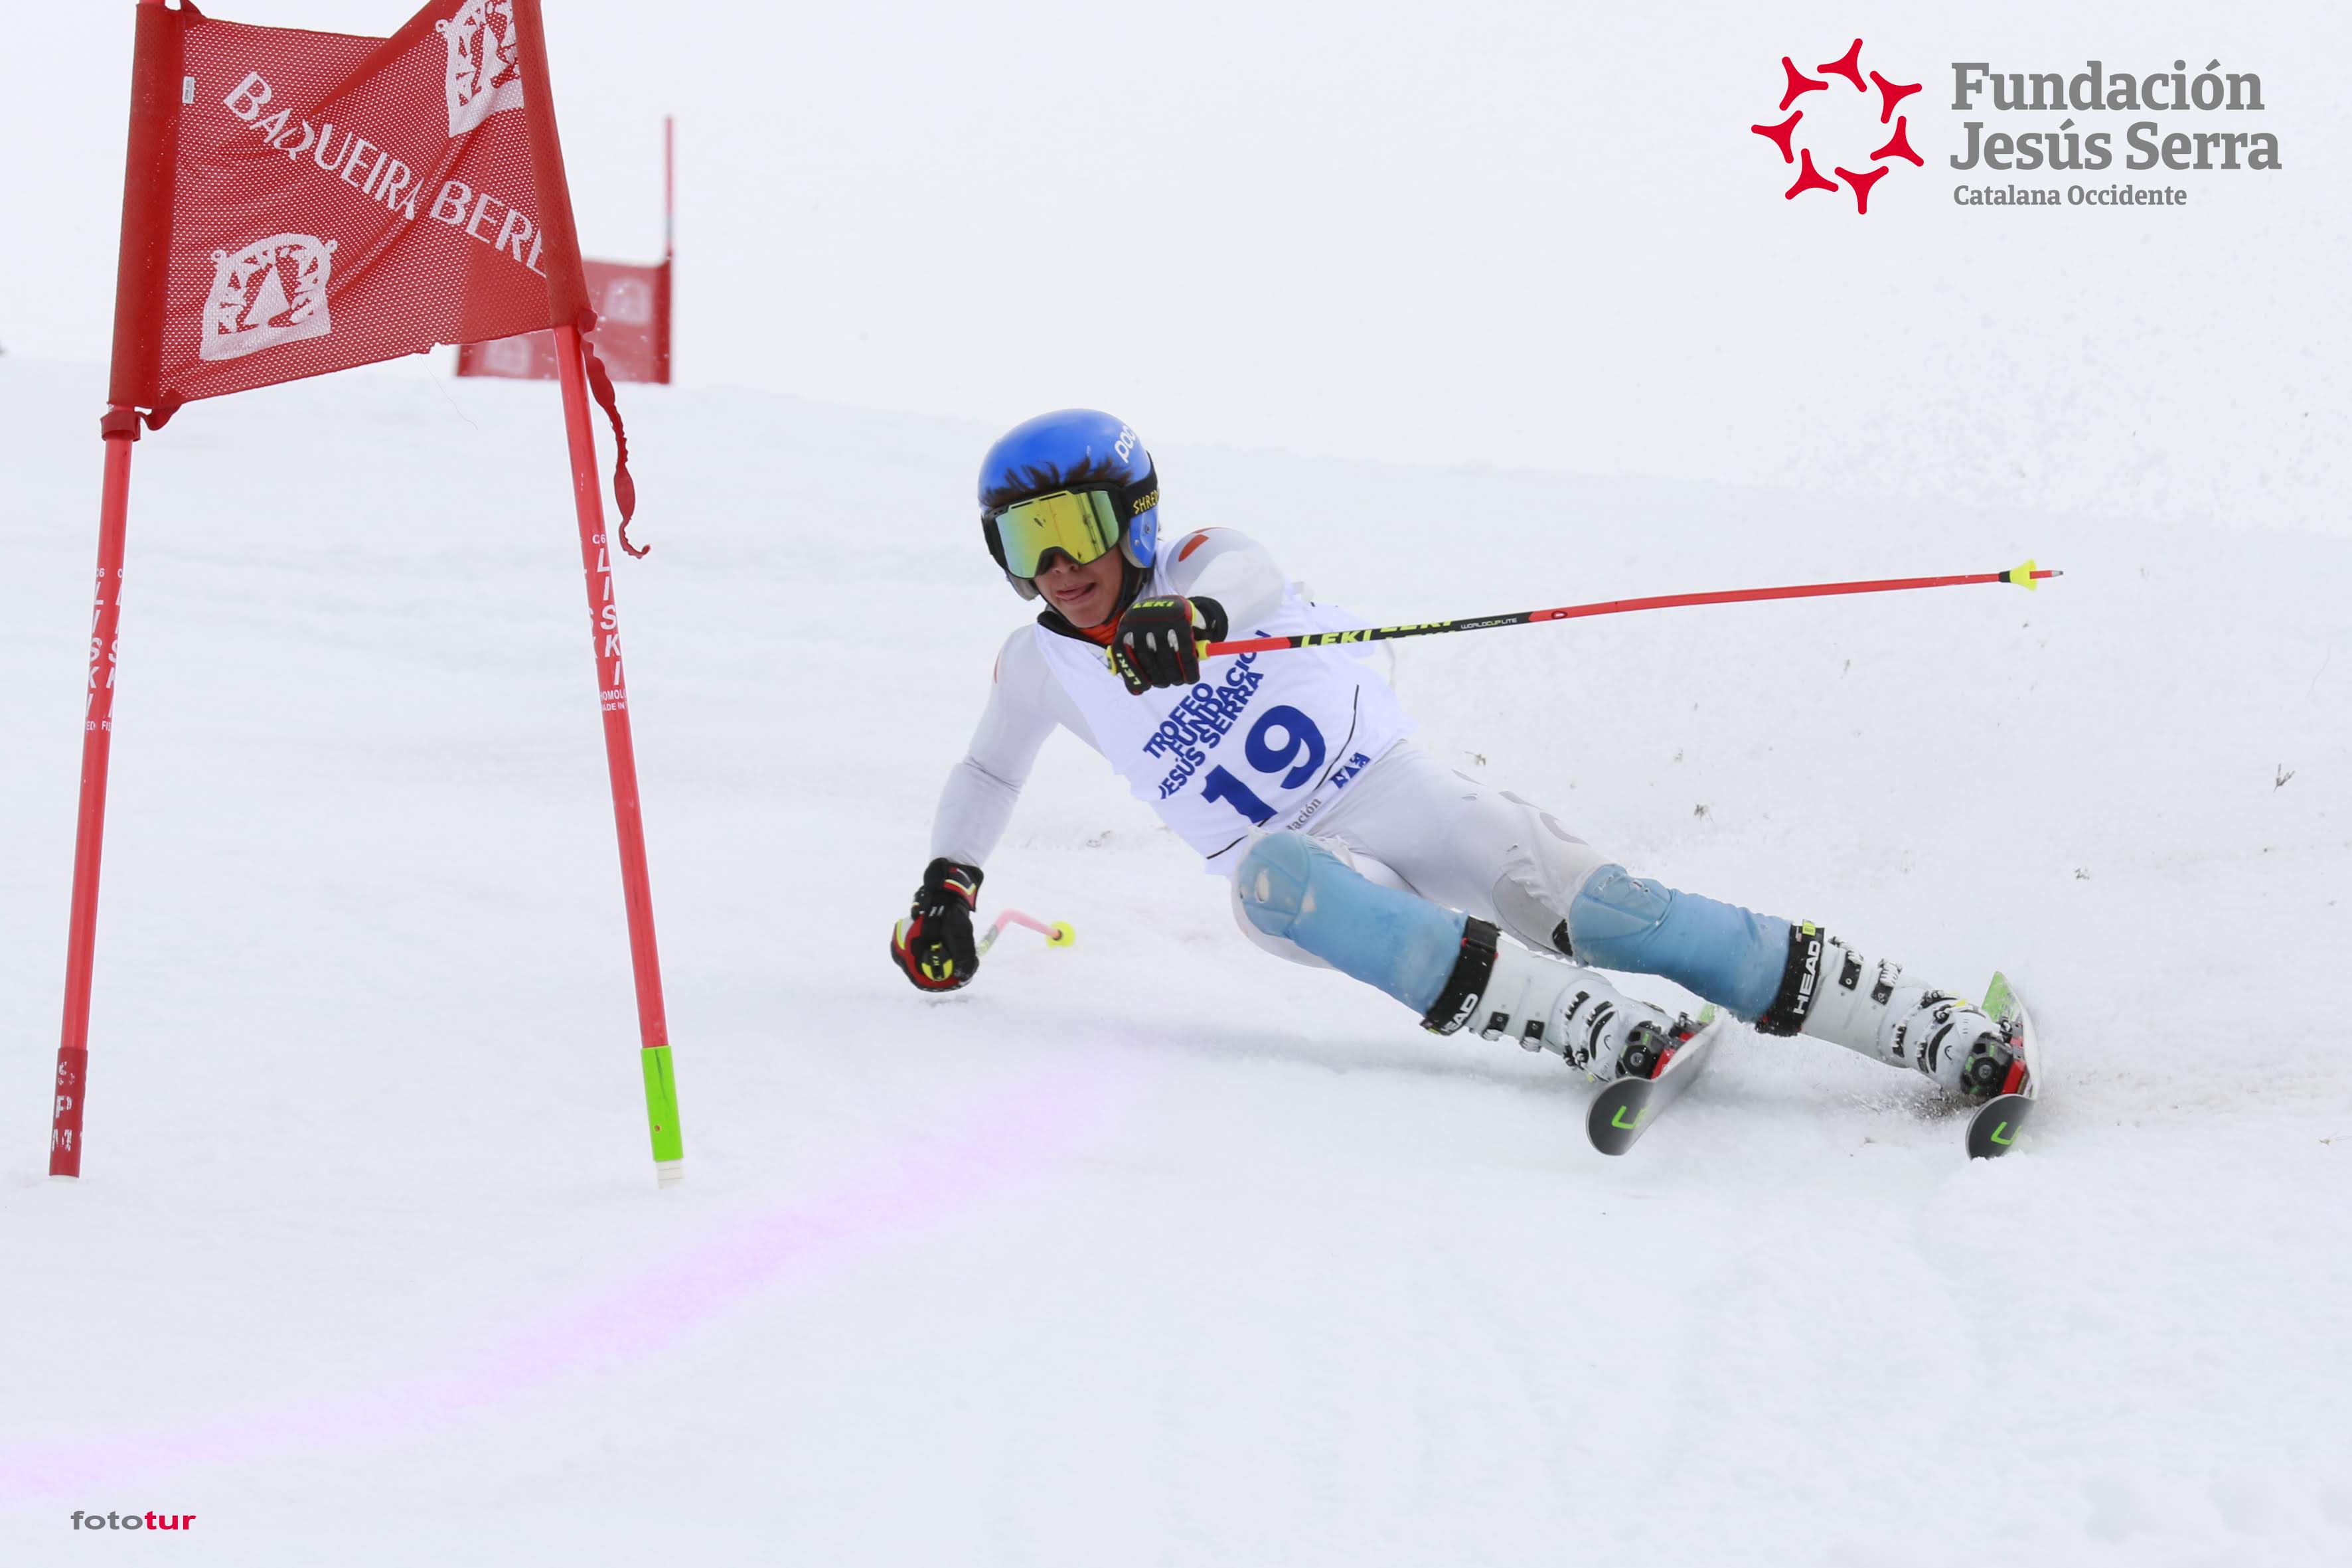 La Fundación Jesús Serra organiza la 14º edición de su afamado trofeo de esquí en Baqueira